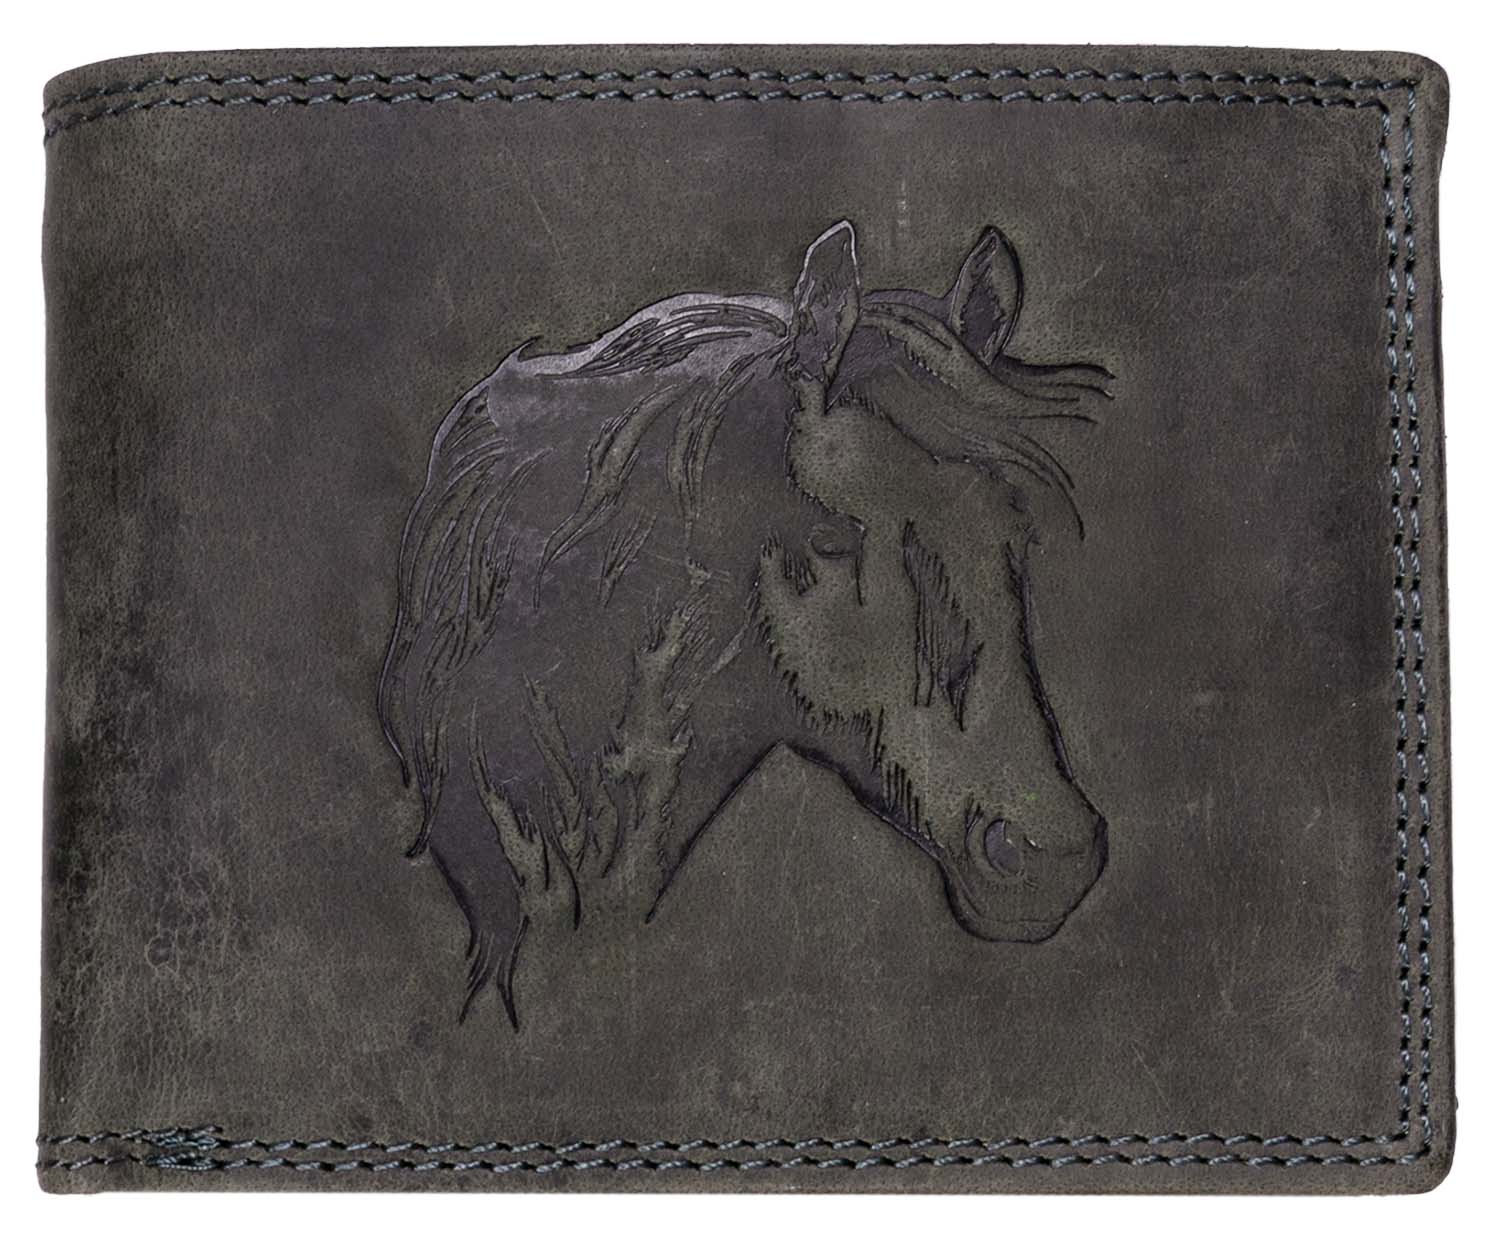 E-shop Luxusná kožená peňaženka s hlavou koňa - čierna